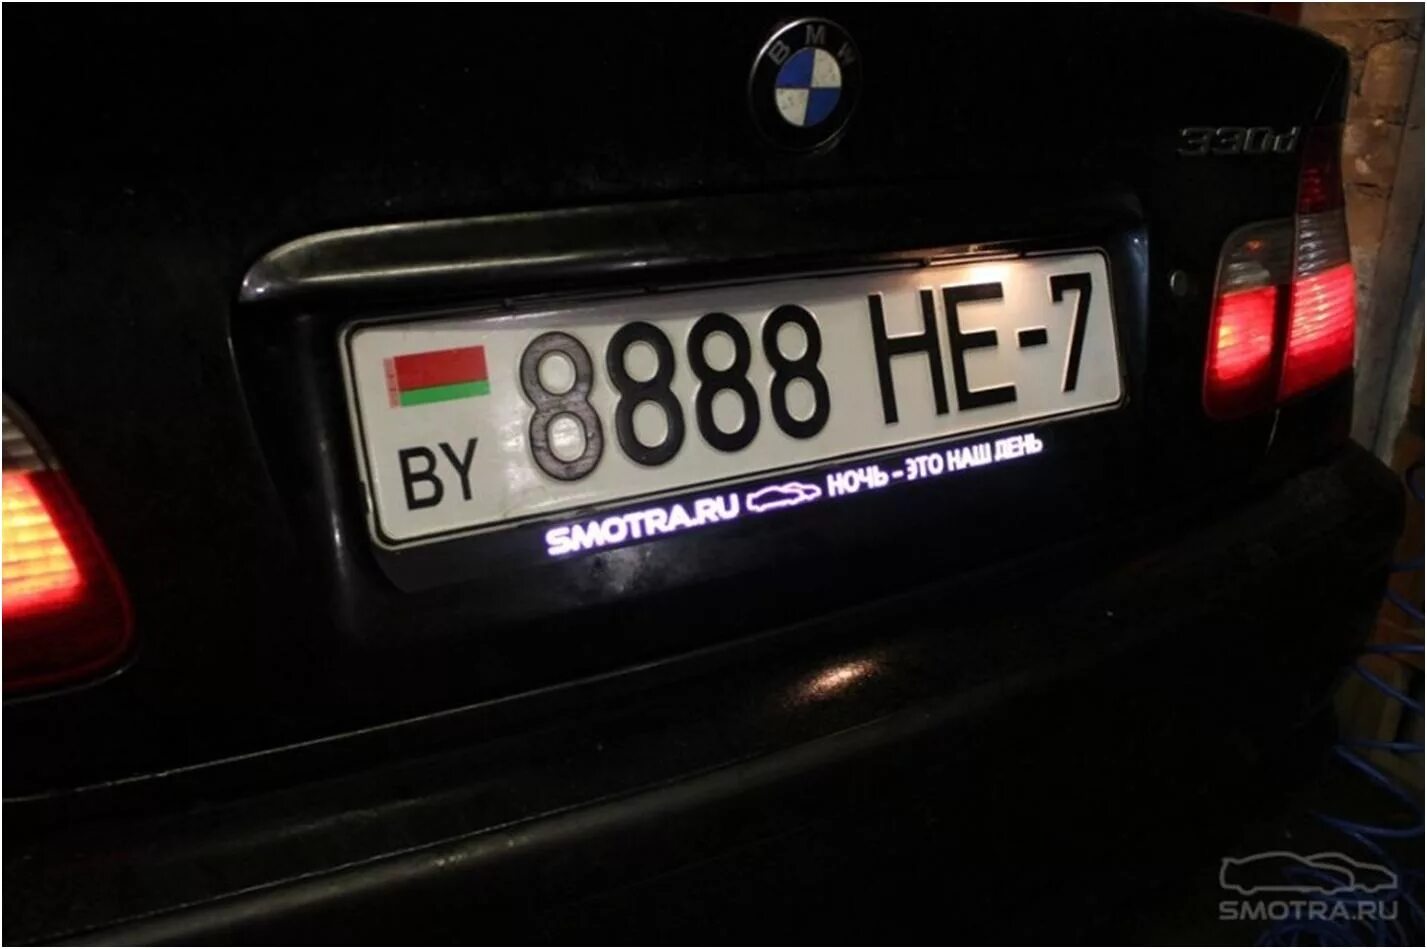 Рамка номерного знака BMW. Рамка номера 2101-07 с подсветкой. Рамка номерного знака с подсветкой номера. Рамка для автомобиля с подсветкой